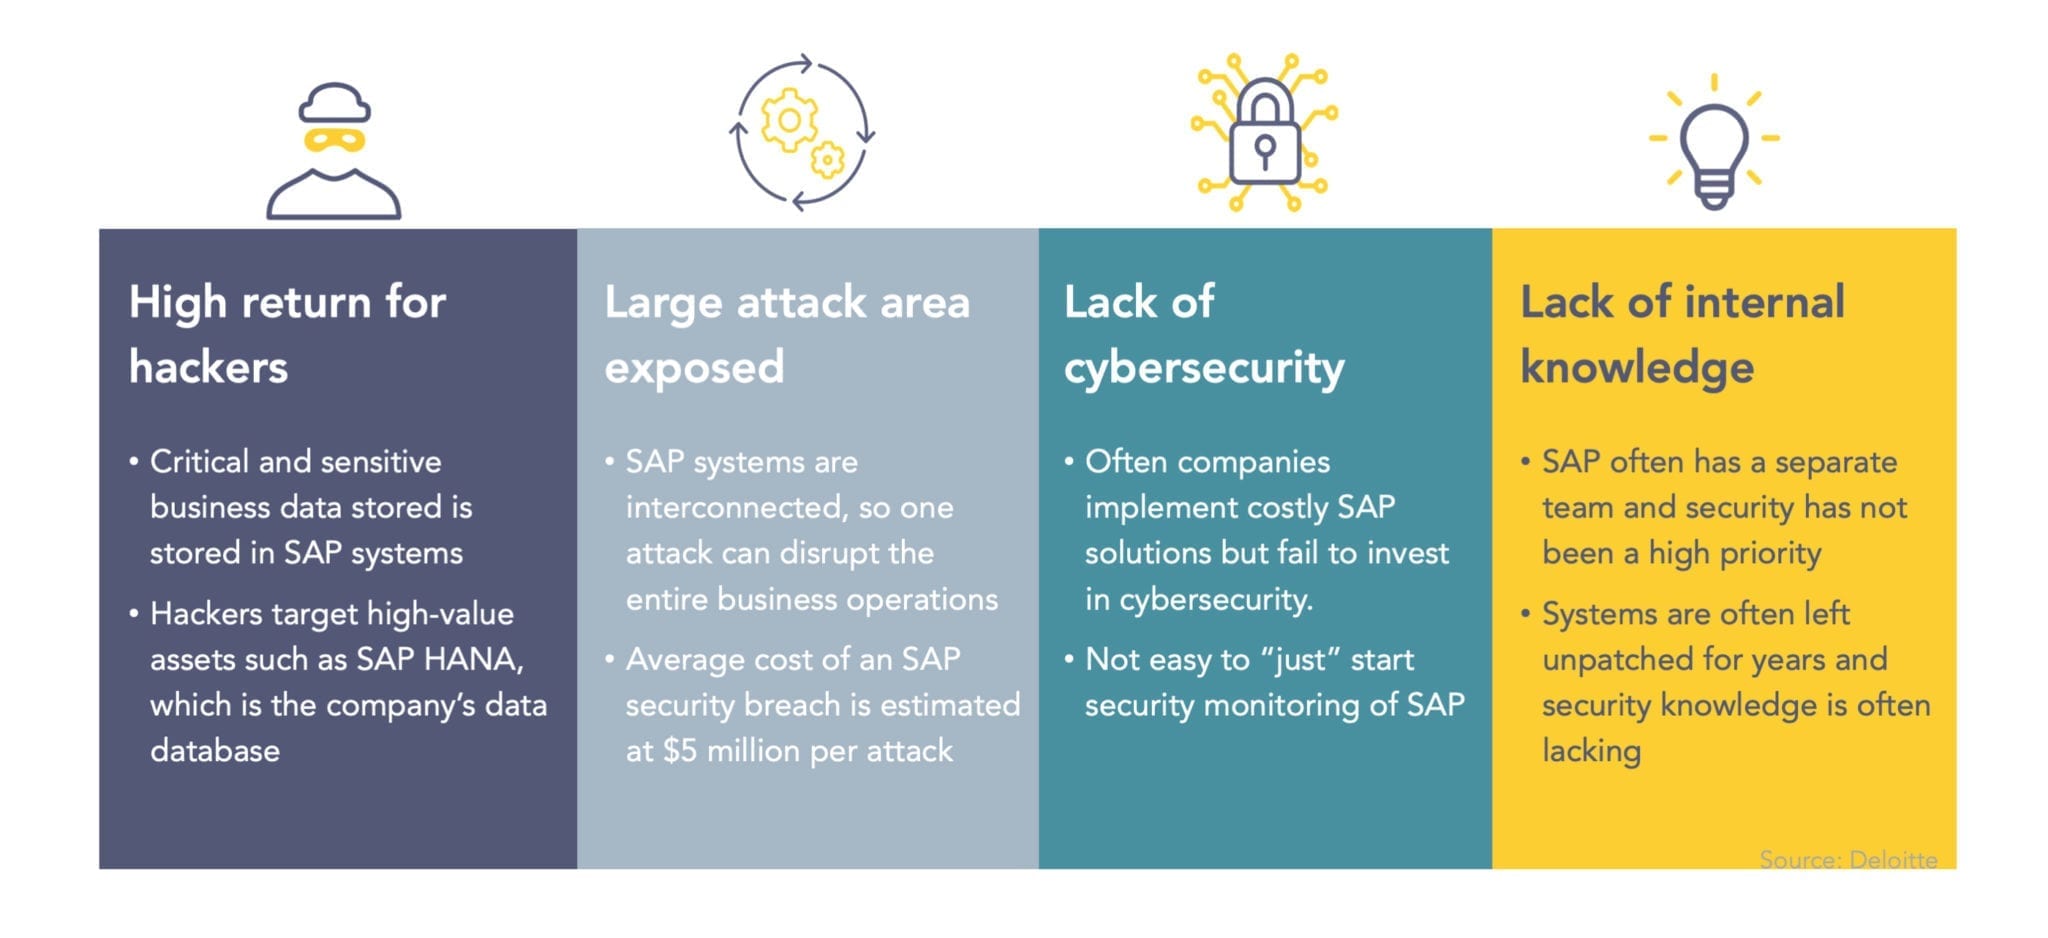 Warum SAP-Systeme besonders anfällig für Cyberattacken sind